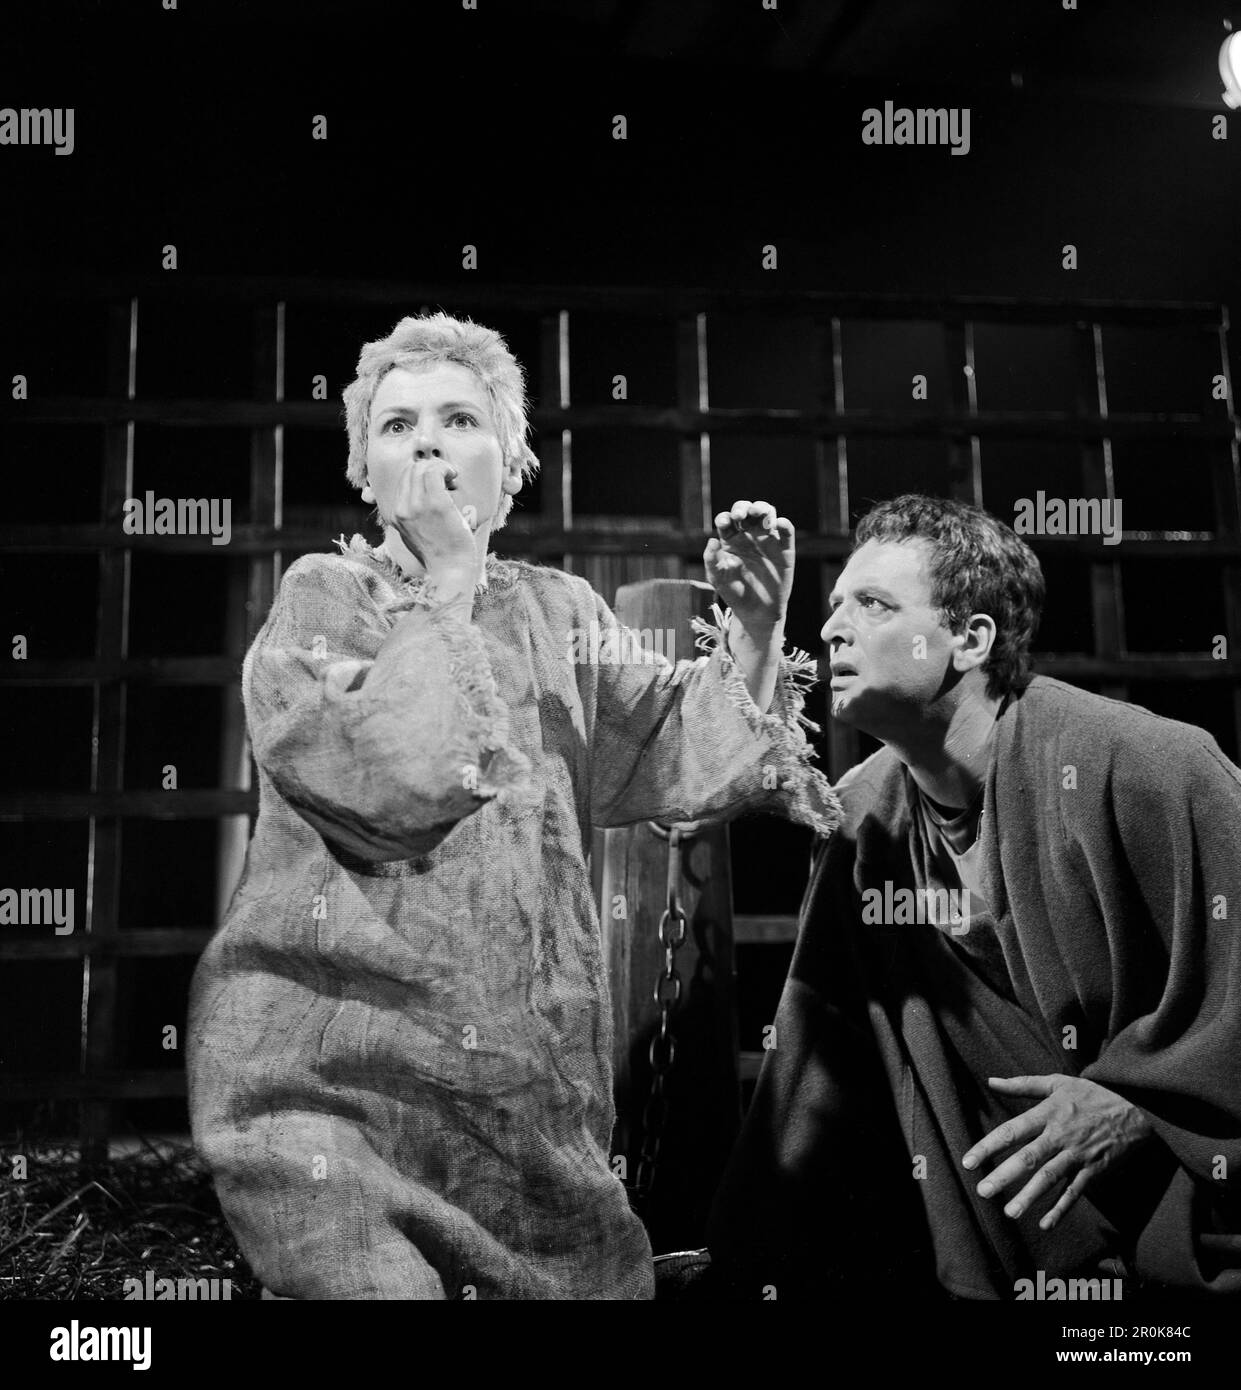 Faust, Spielfilm nach dem Stück von Johann Wolfgang von Goethe, Deutschland 1960, Regie: Peter Gorski, Darsteller: Ella Büchi, Will Quadflieg im Kerker Stock Photo